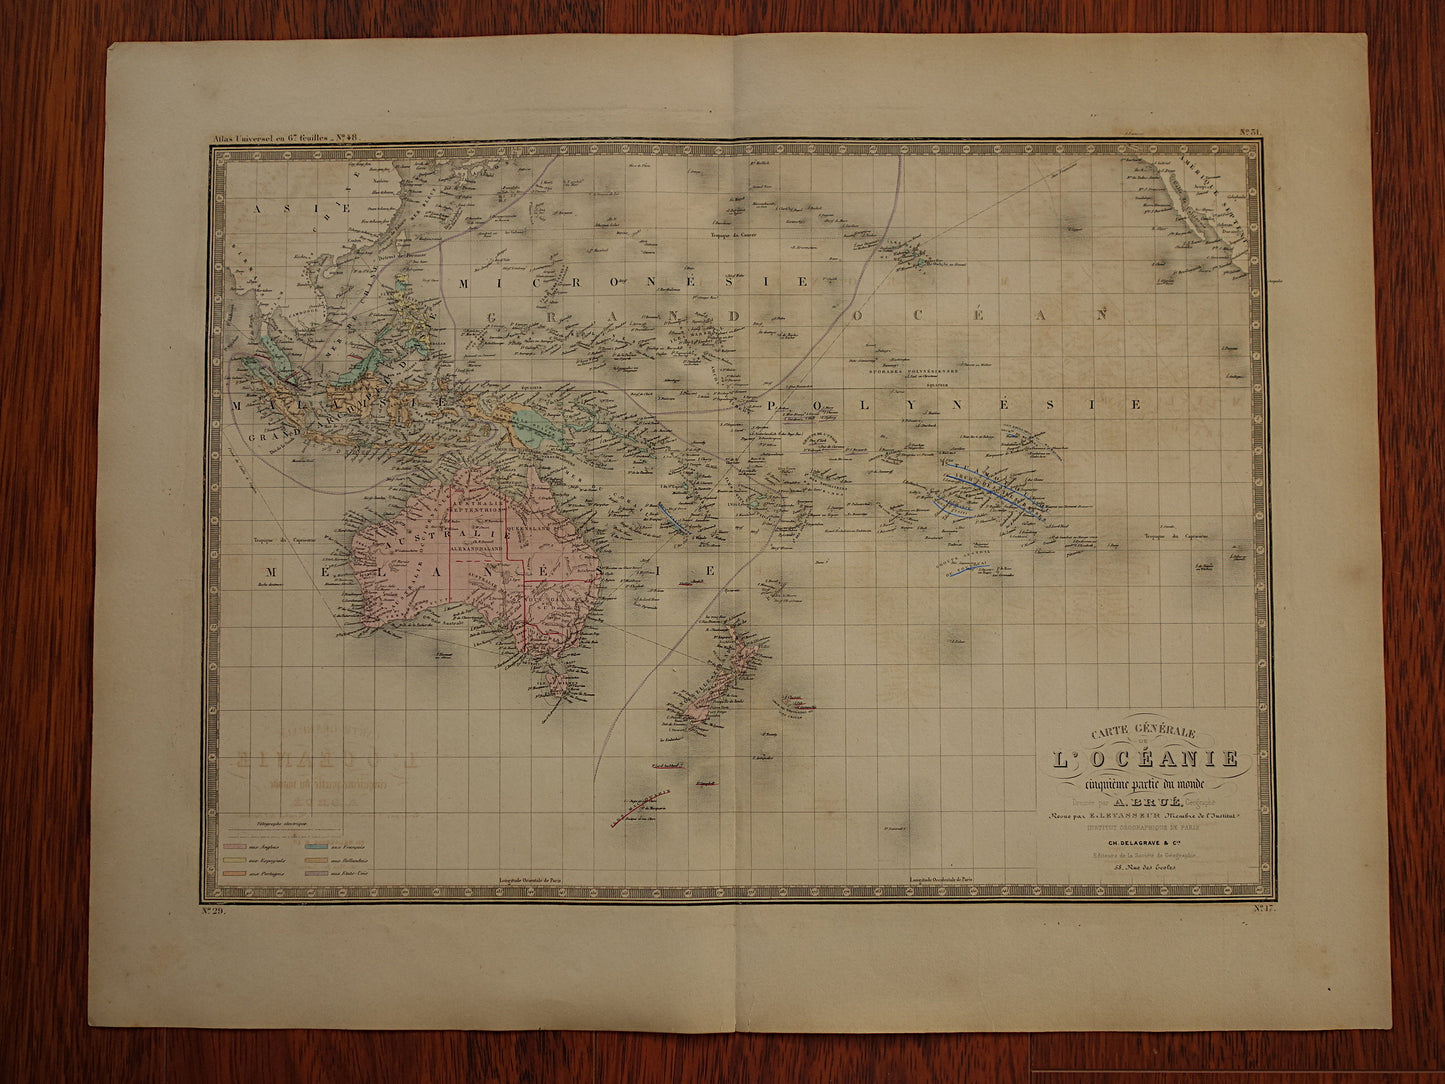 OCEANIË antieke kaart van Australië Nieuw-Zeeland 145+ jaar oude landkaart van Oceanie continent met Indonesië Grote originele vintage historische kaarten